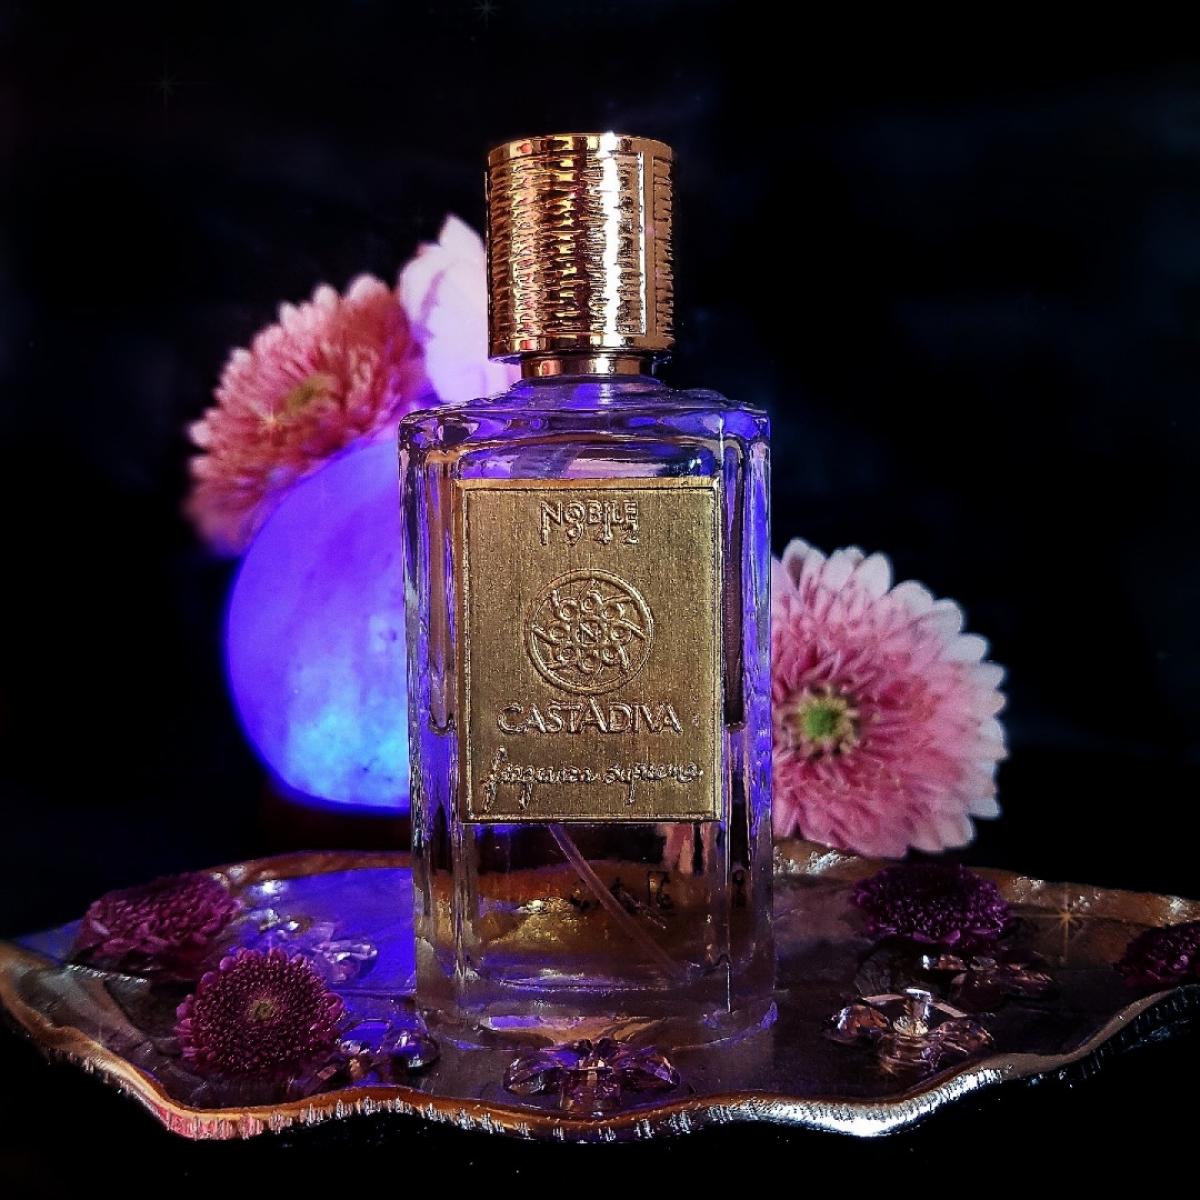 Casta Diva Nobile 1942 perfume - a fragrance for women 2009